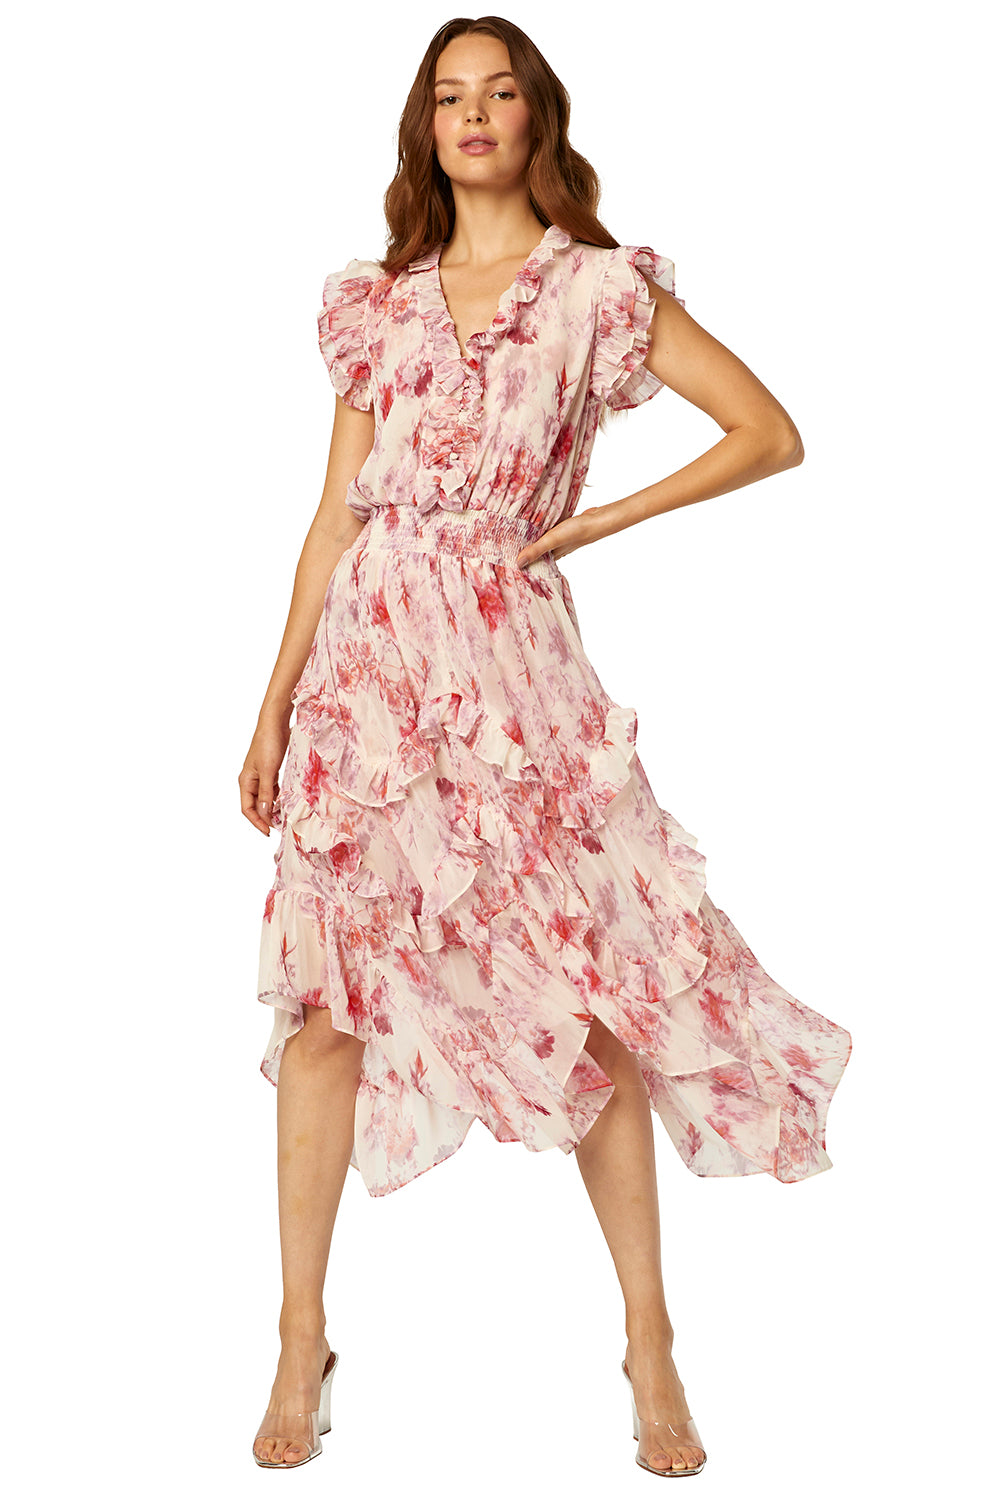 Misa - Dakota Dress in Abstract Rose Flora